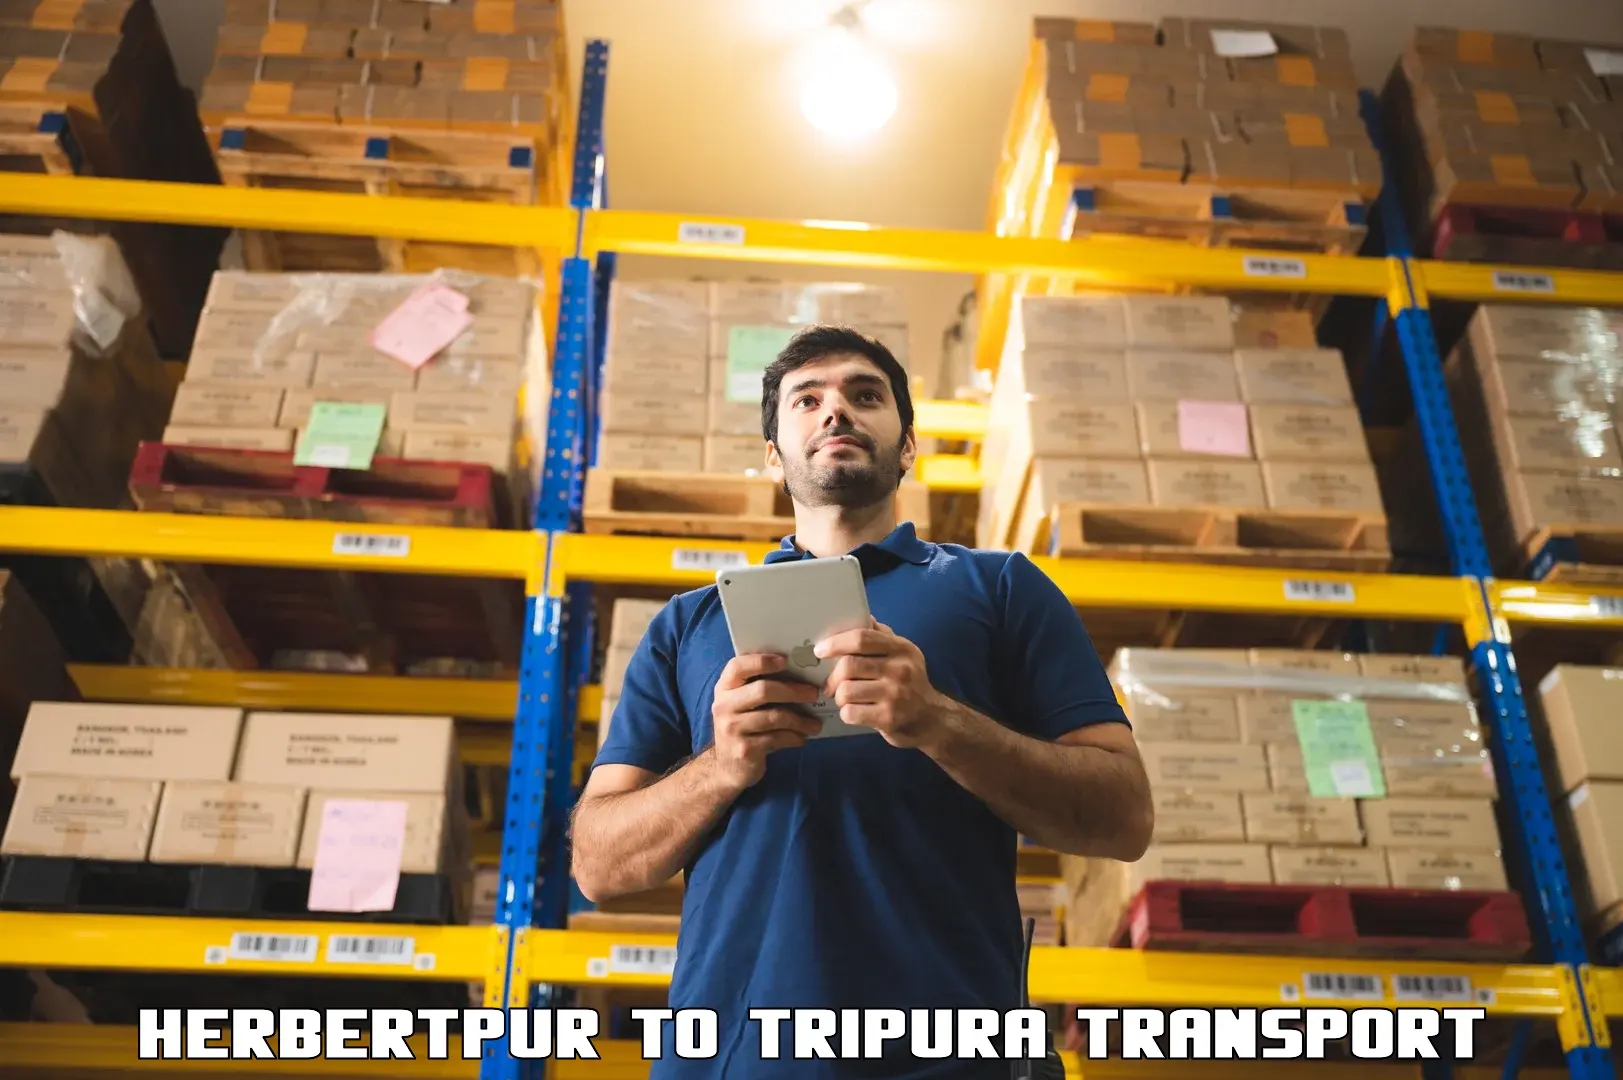 Online transport service Herbertpur to Manughat